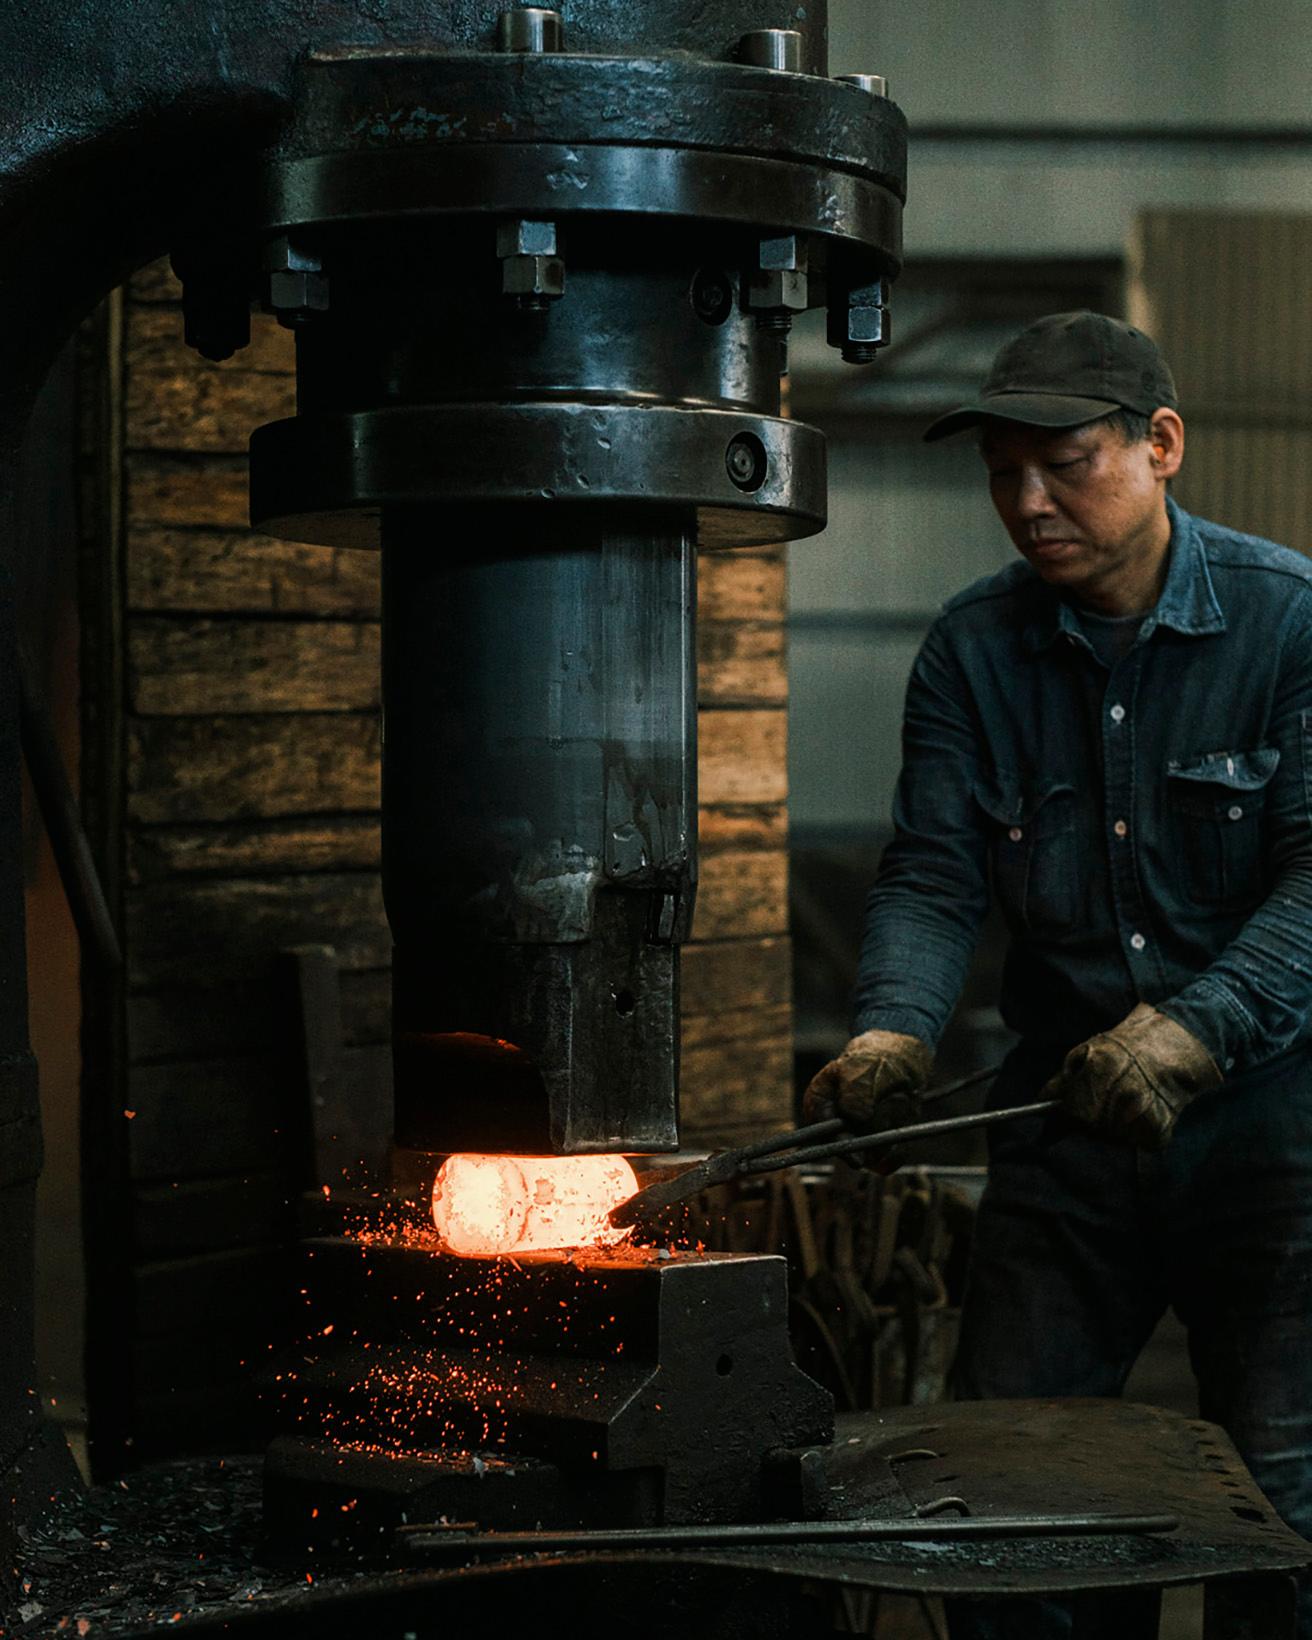 1200〜1250℃に熱した鉄材をエアーハンマーで叩く、鍛造作業の一工程。ちなみに作業服のトップスは〈LEE〉製、ボトムスは地元メーカーのデニム。